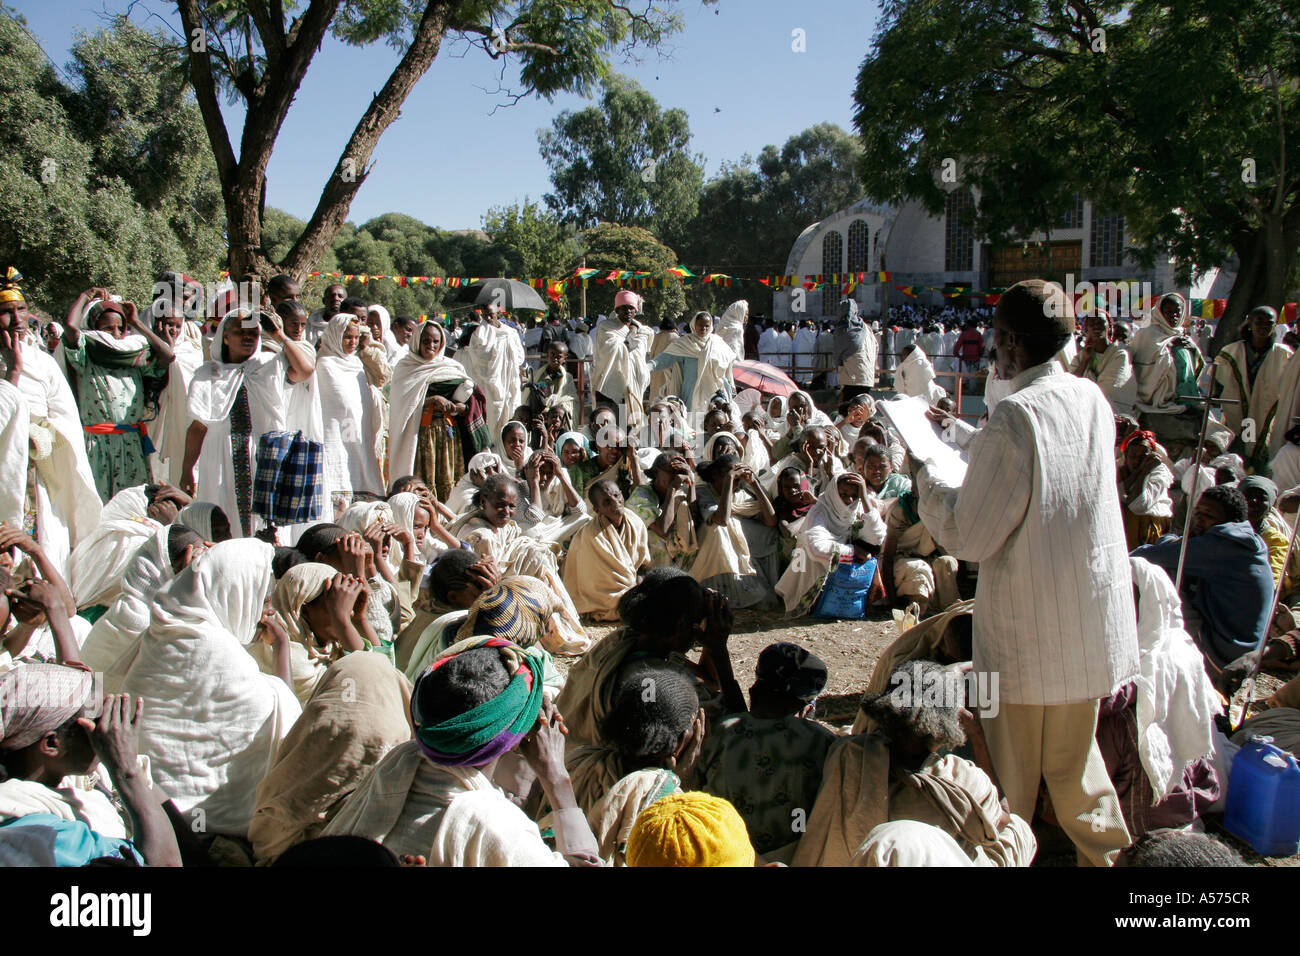 Jb1271 Etiopia maryam festa maria axum predicatore al di fuori di Sion Chiesa in Africa la religione ortodossa cristianesimo festival Foto Stock